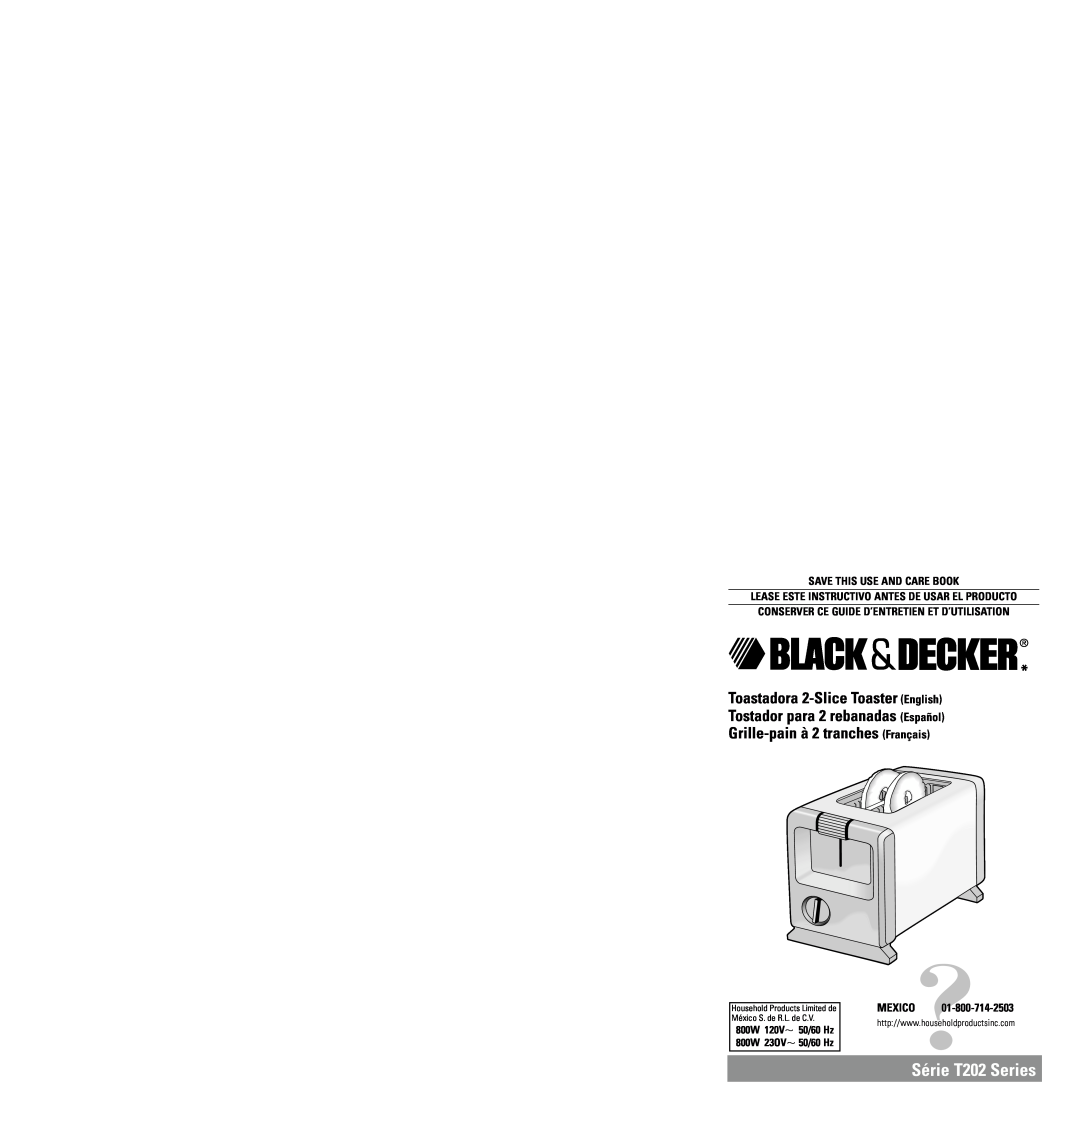 Black & Decker T202 dimensions Toastadora 2-SliceToaster English, Tostador para 2 rebanadas Español, 800W, 120V, 23OV 